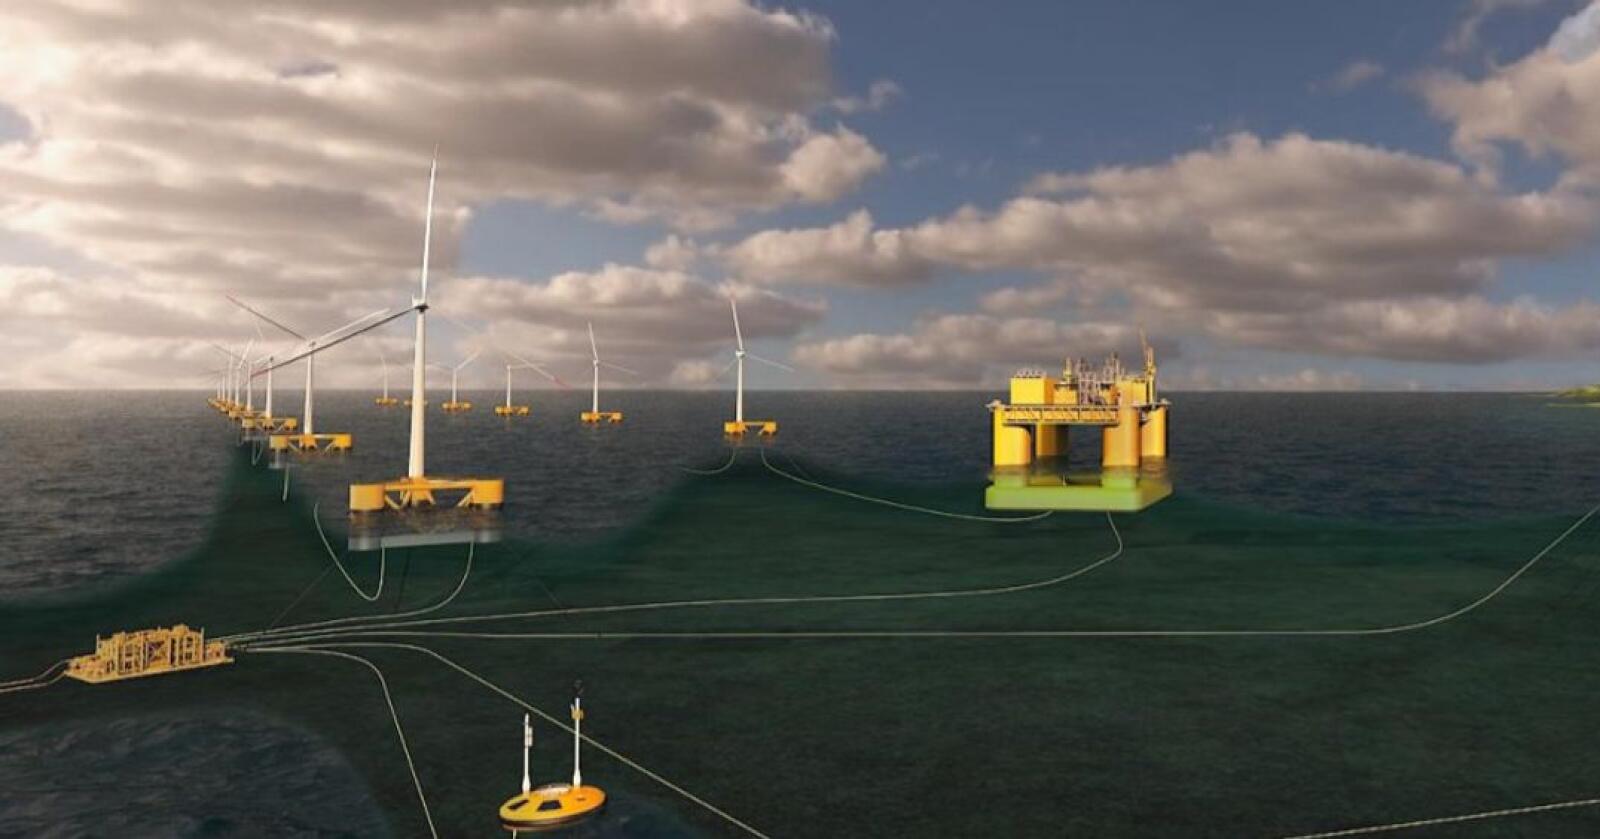 Aker offshore wind ønsker å bygge marine næringsparker ved å samlokalisere flere typer næringer rundt havvindkraft- anlegg